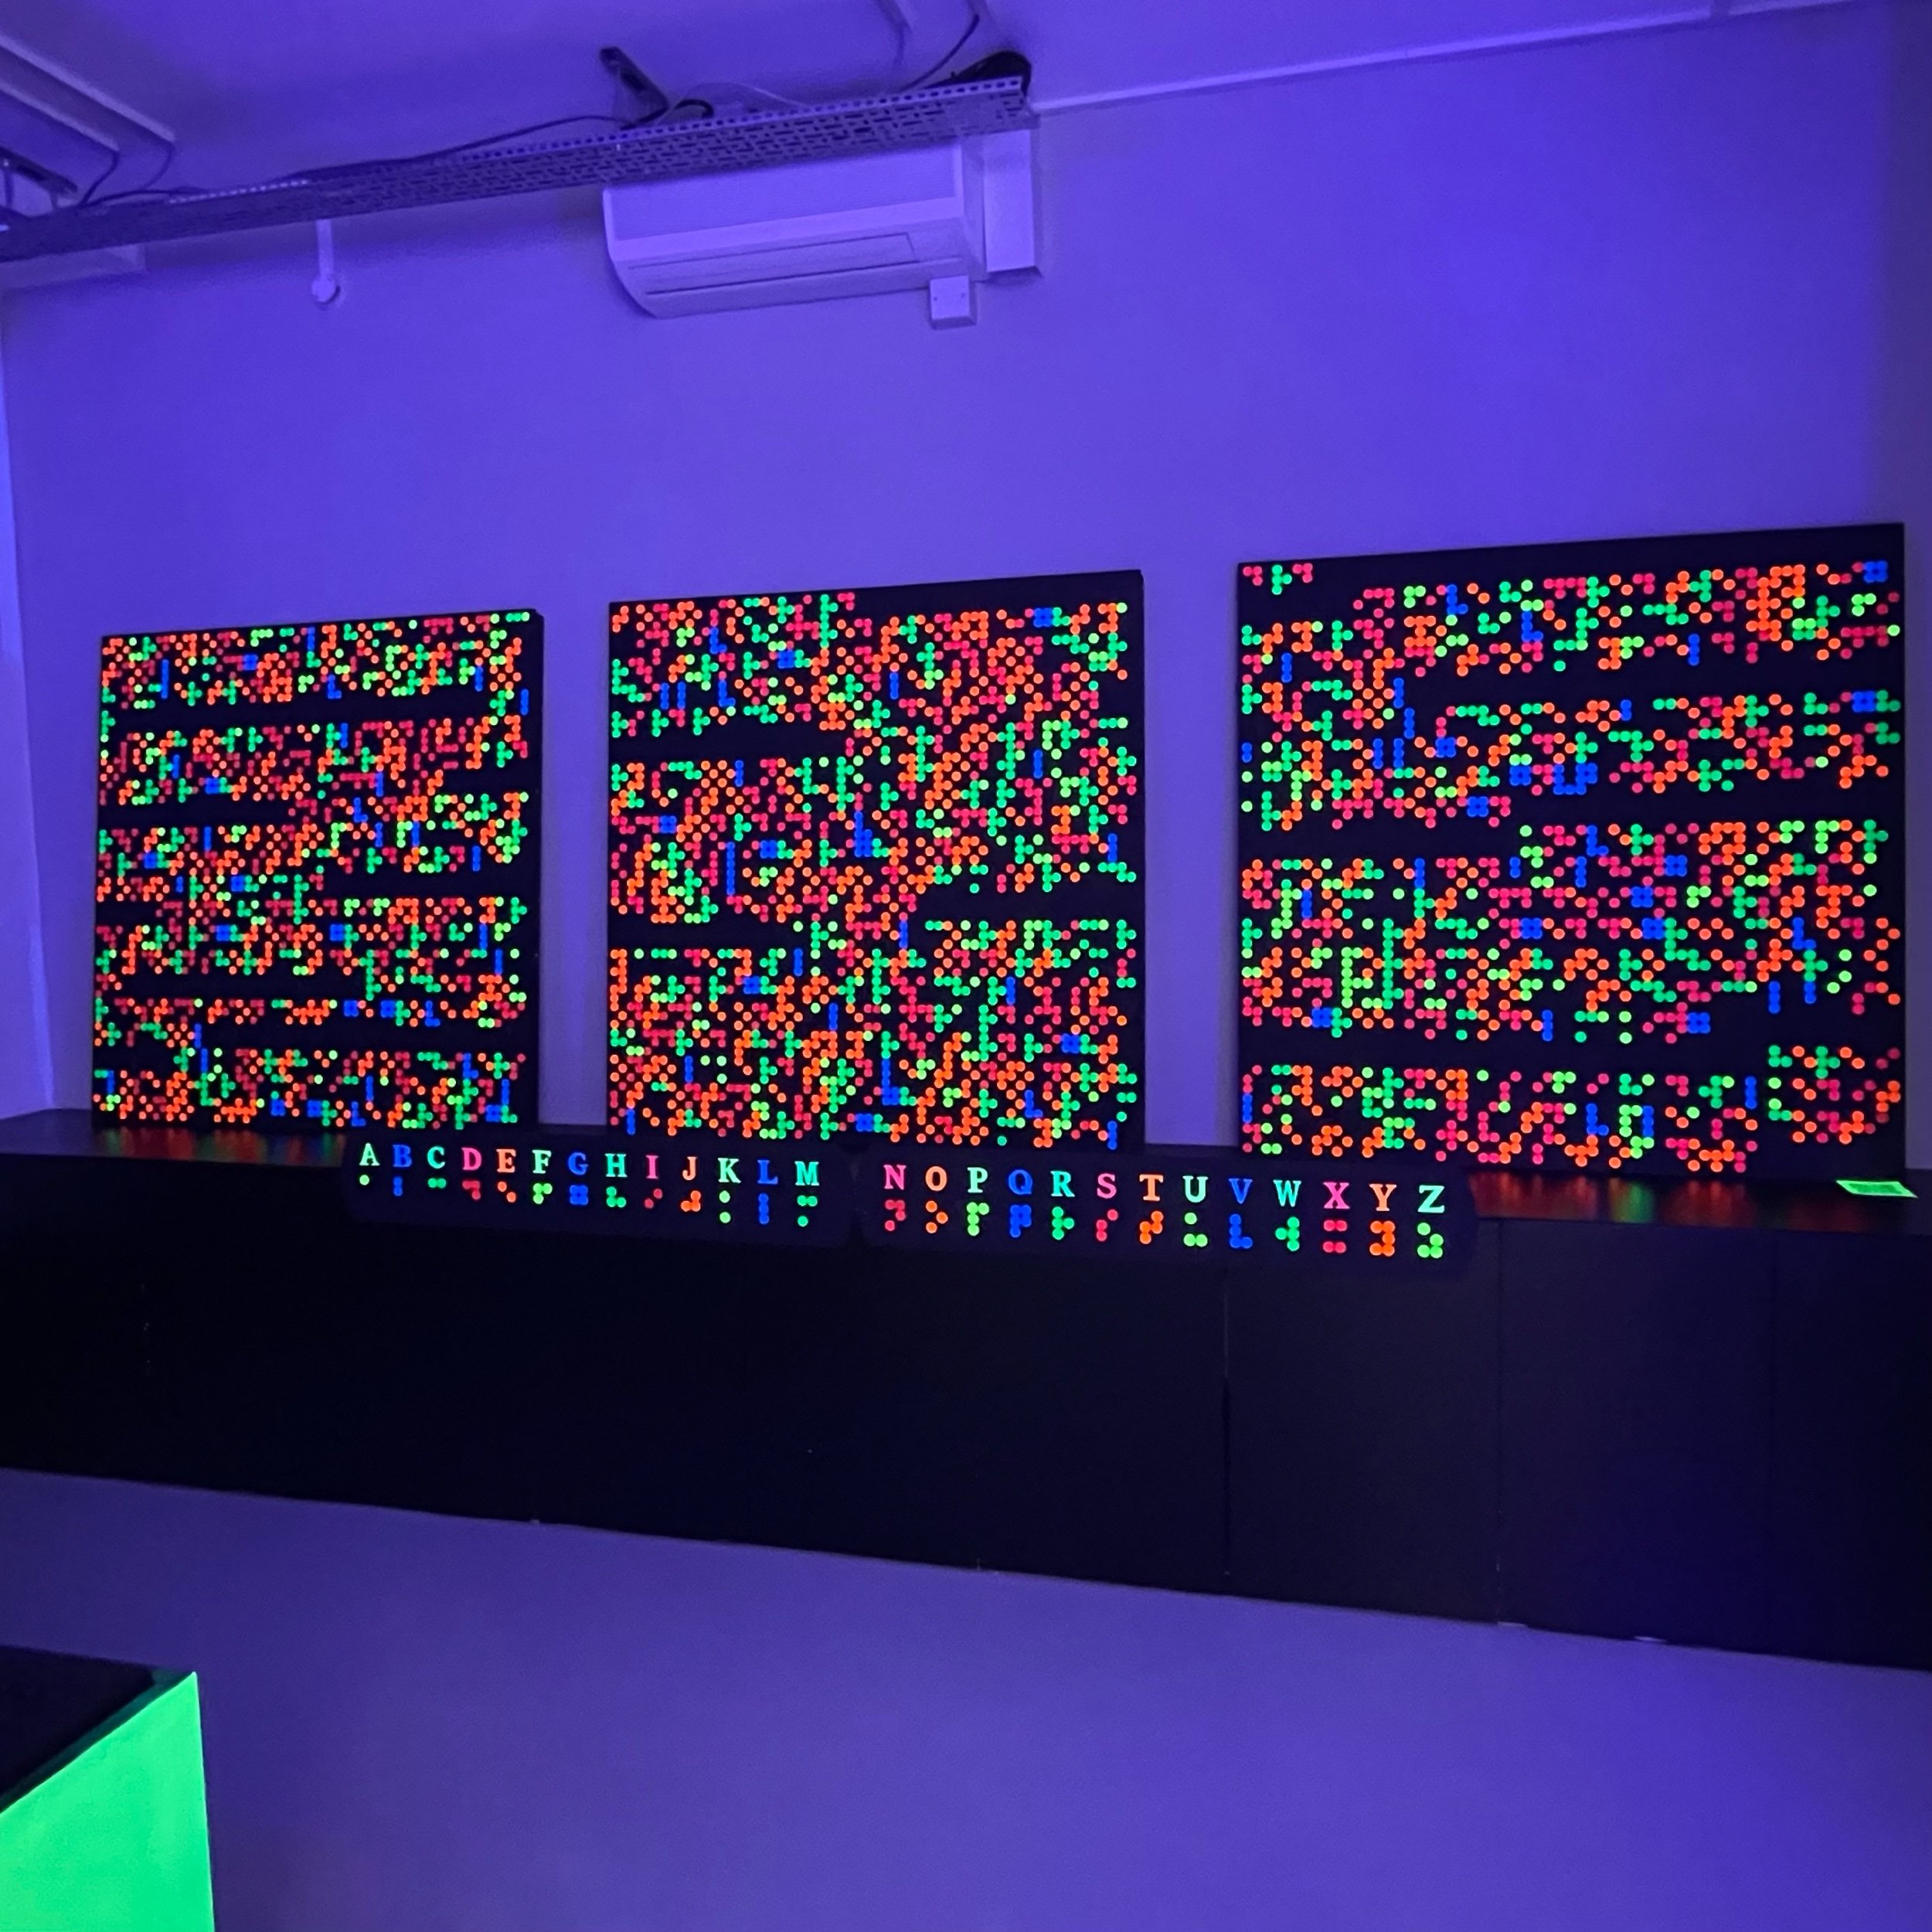 Braille panels lit under UV light